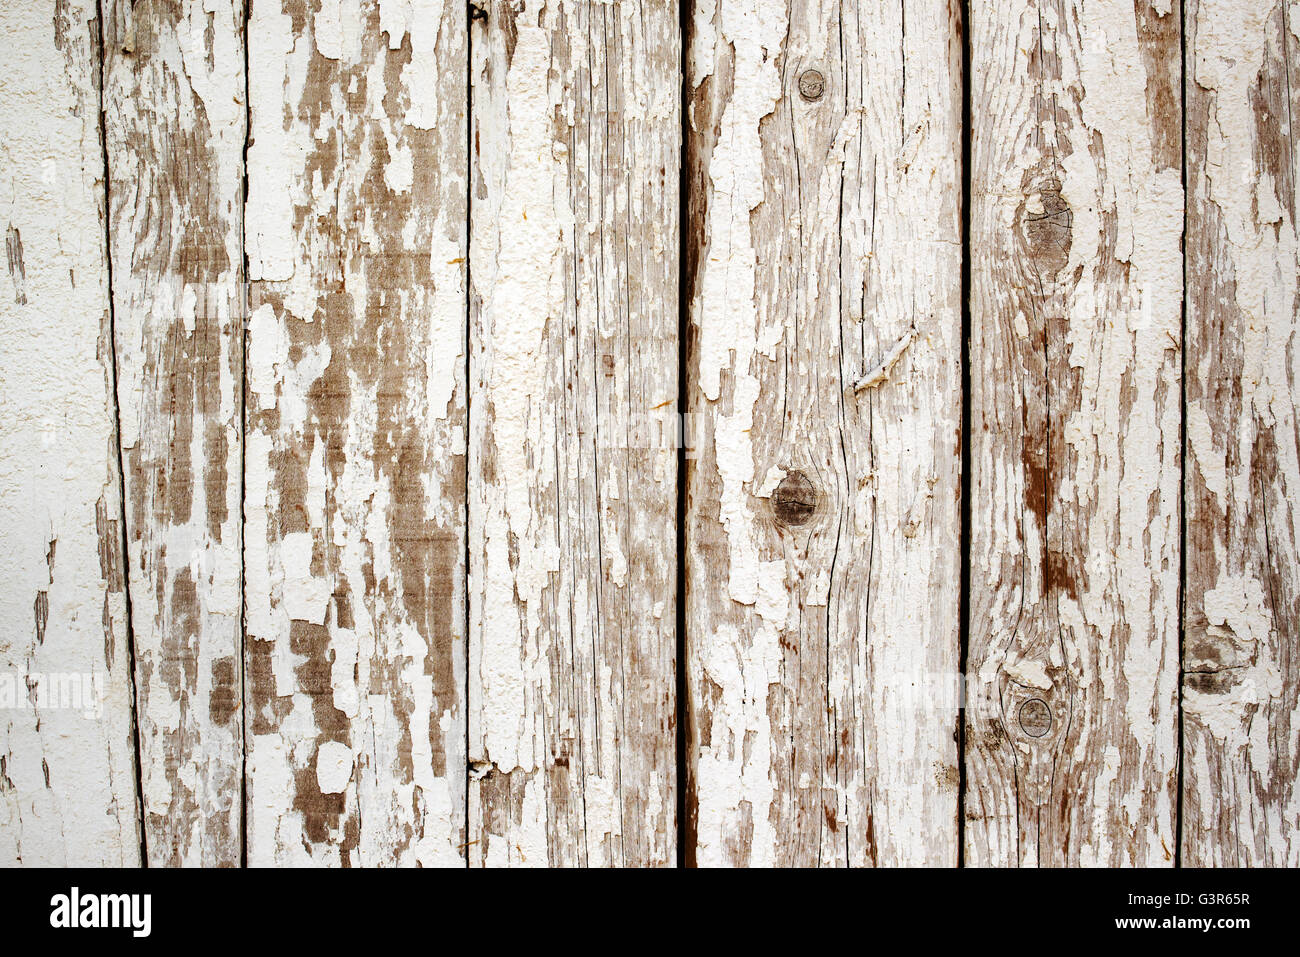 Una pared de madera con pintura blanca que tiene una textura de madera.